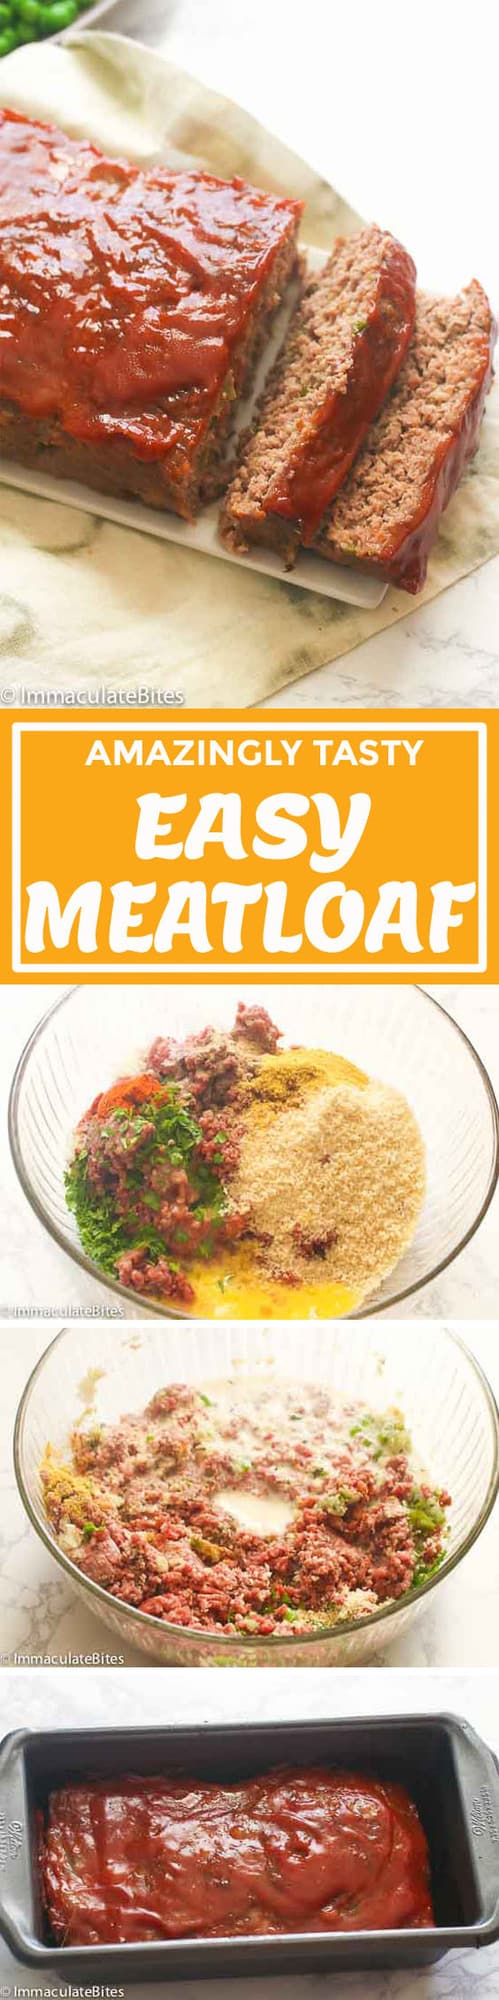 Easy Meatloaf